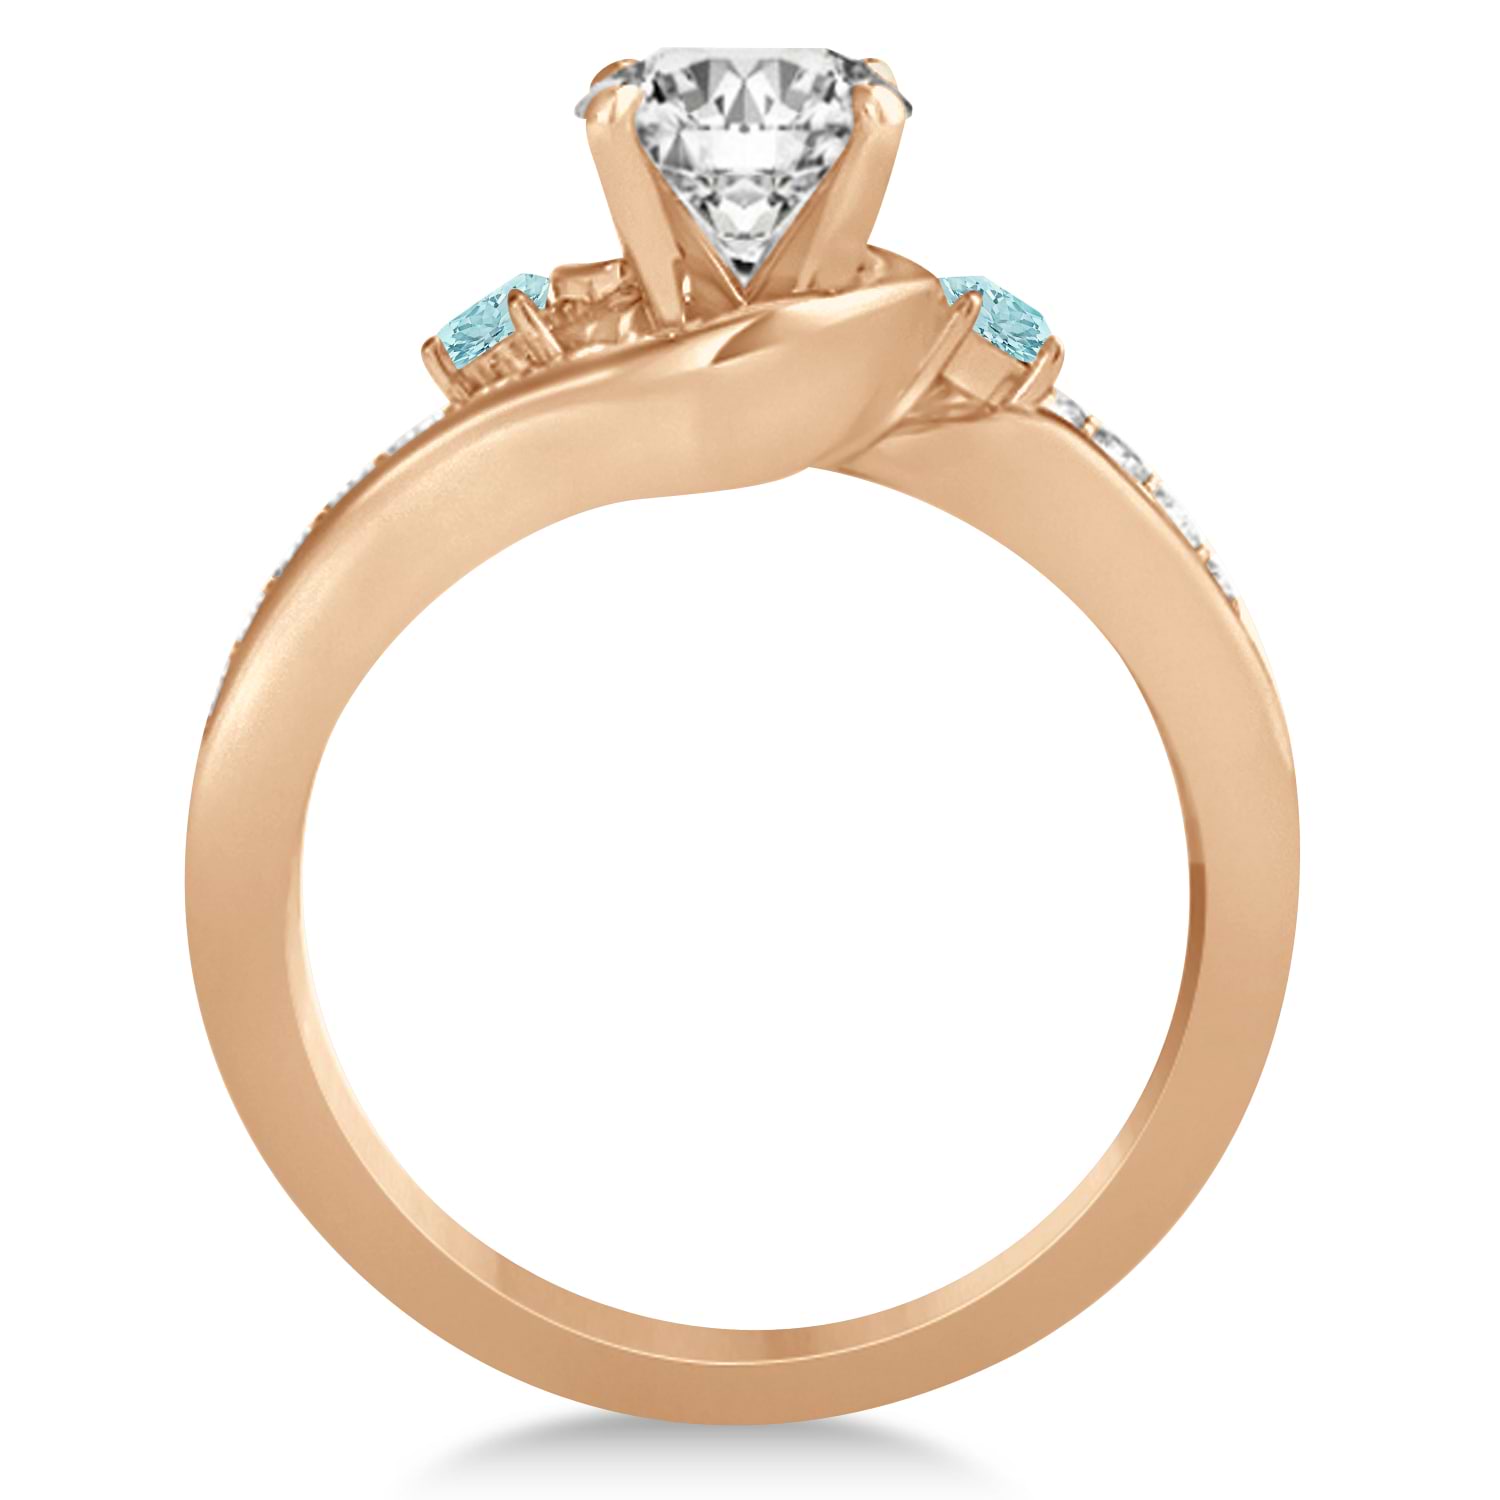 Aquamarine & Diamond Swirl Engagement Ring & Band Bridal Set 18k Rose Gold 0.58ct